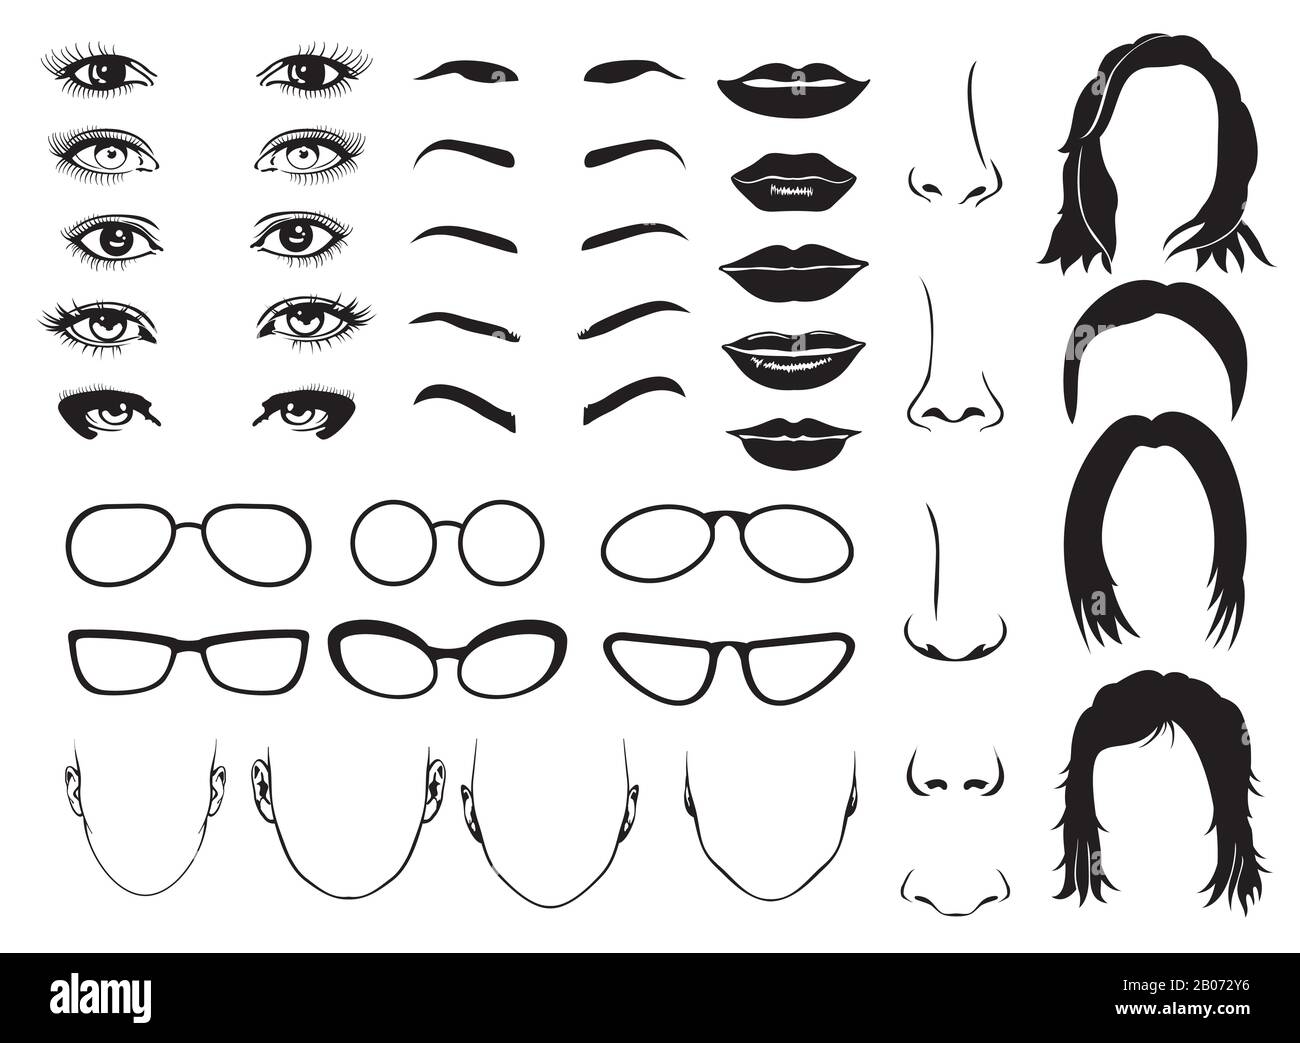 Frau Gesicht Teile, Auge, Brille, Lippen und Haare. Vektor weibliche Elemente für Konstruktor Portrait Illustration Stock Vektor